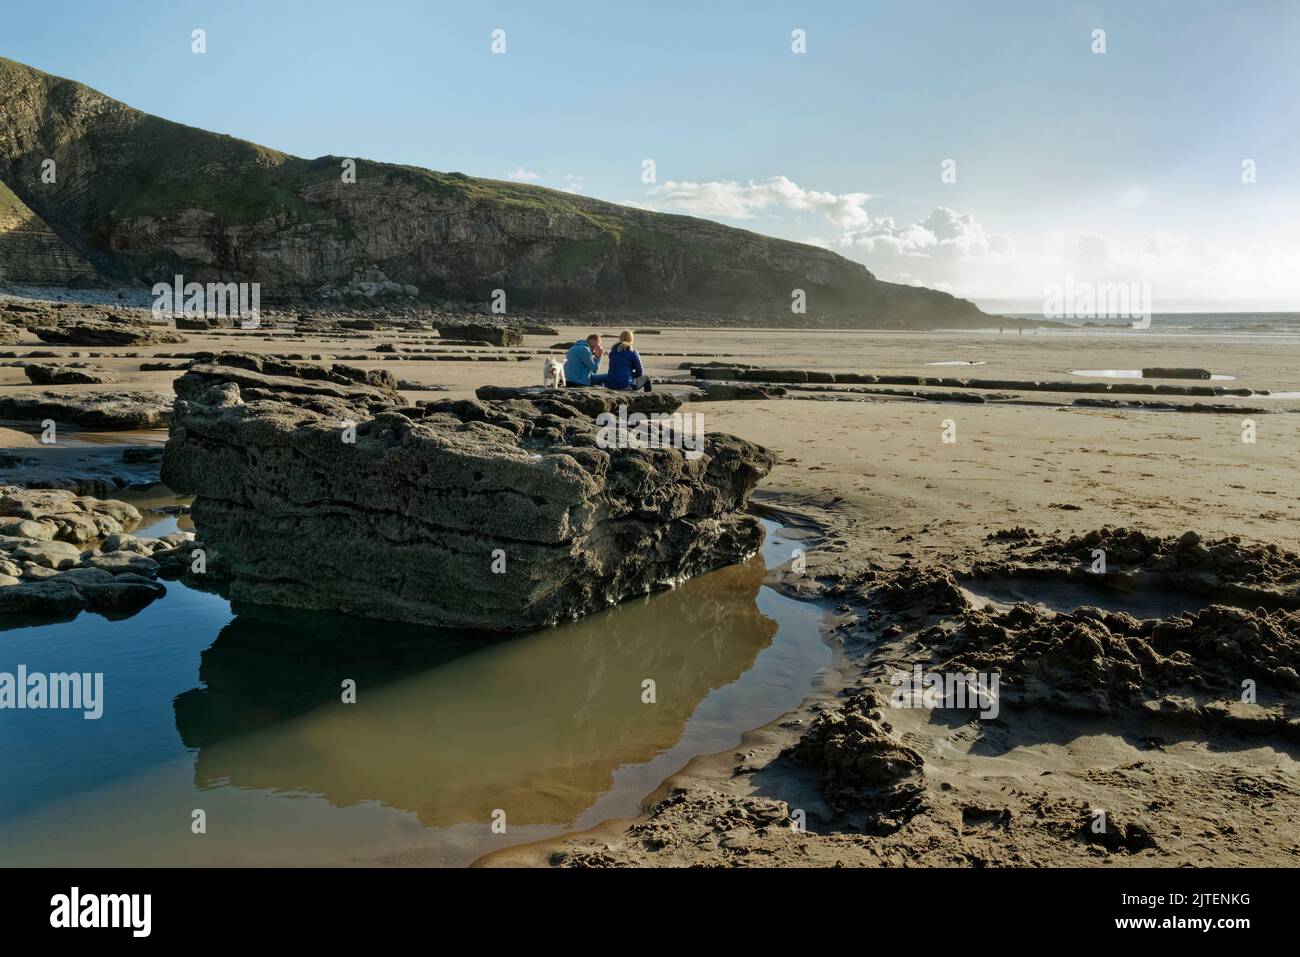 Les gens se reposant sur des roches calcaires sur la plage de Southerndown avec leur chien, Dunraven Bay à marée basse, Glamourgan Heritage Coast, South Wales, Royaume-Uni, octobre. Banque D'Images